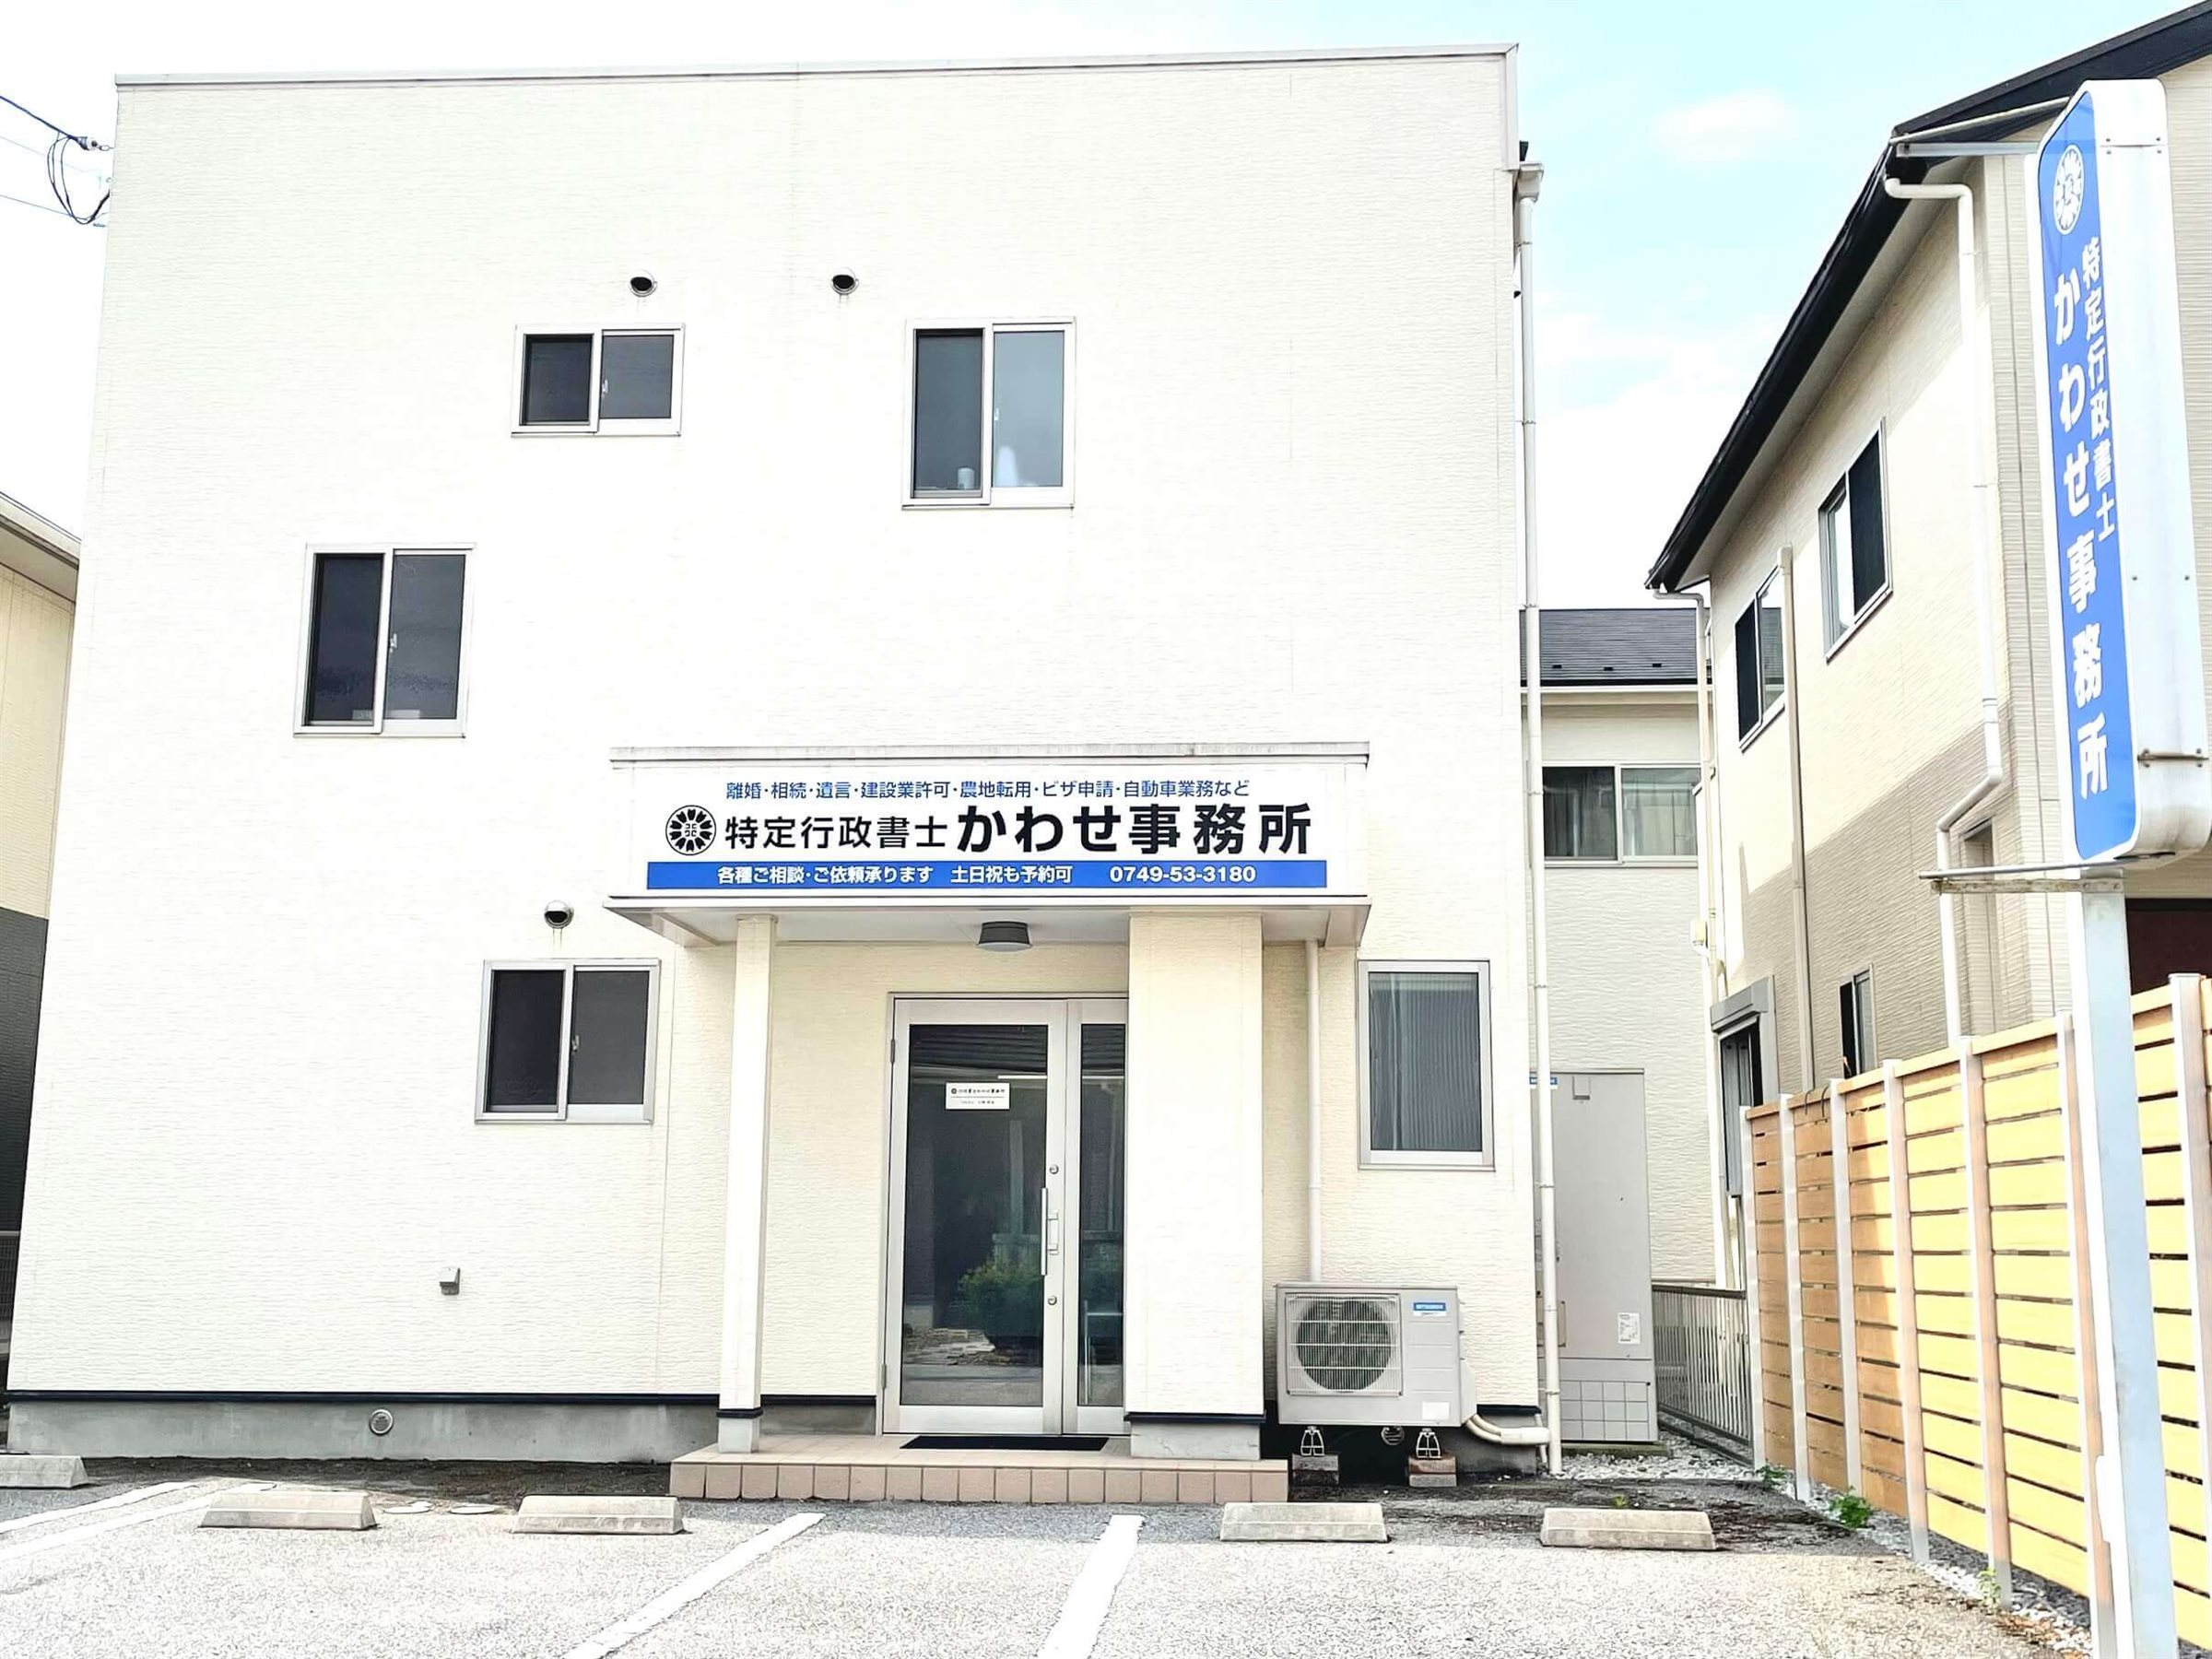 滋賀県長浜市の営業許可と許認可　事務所外観の画像